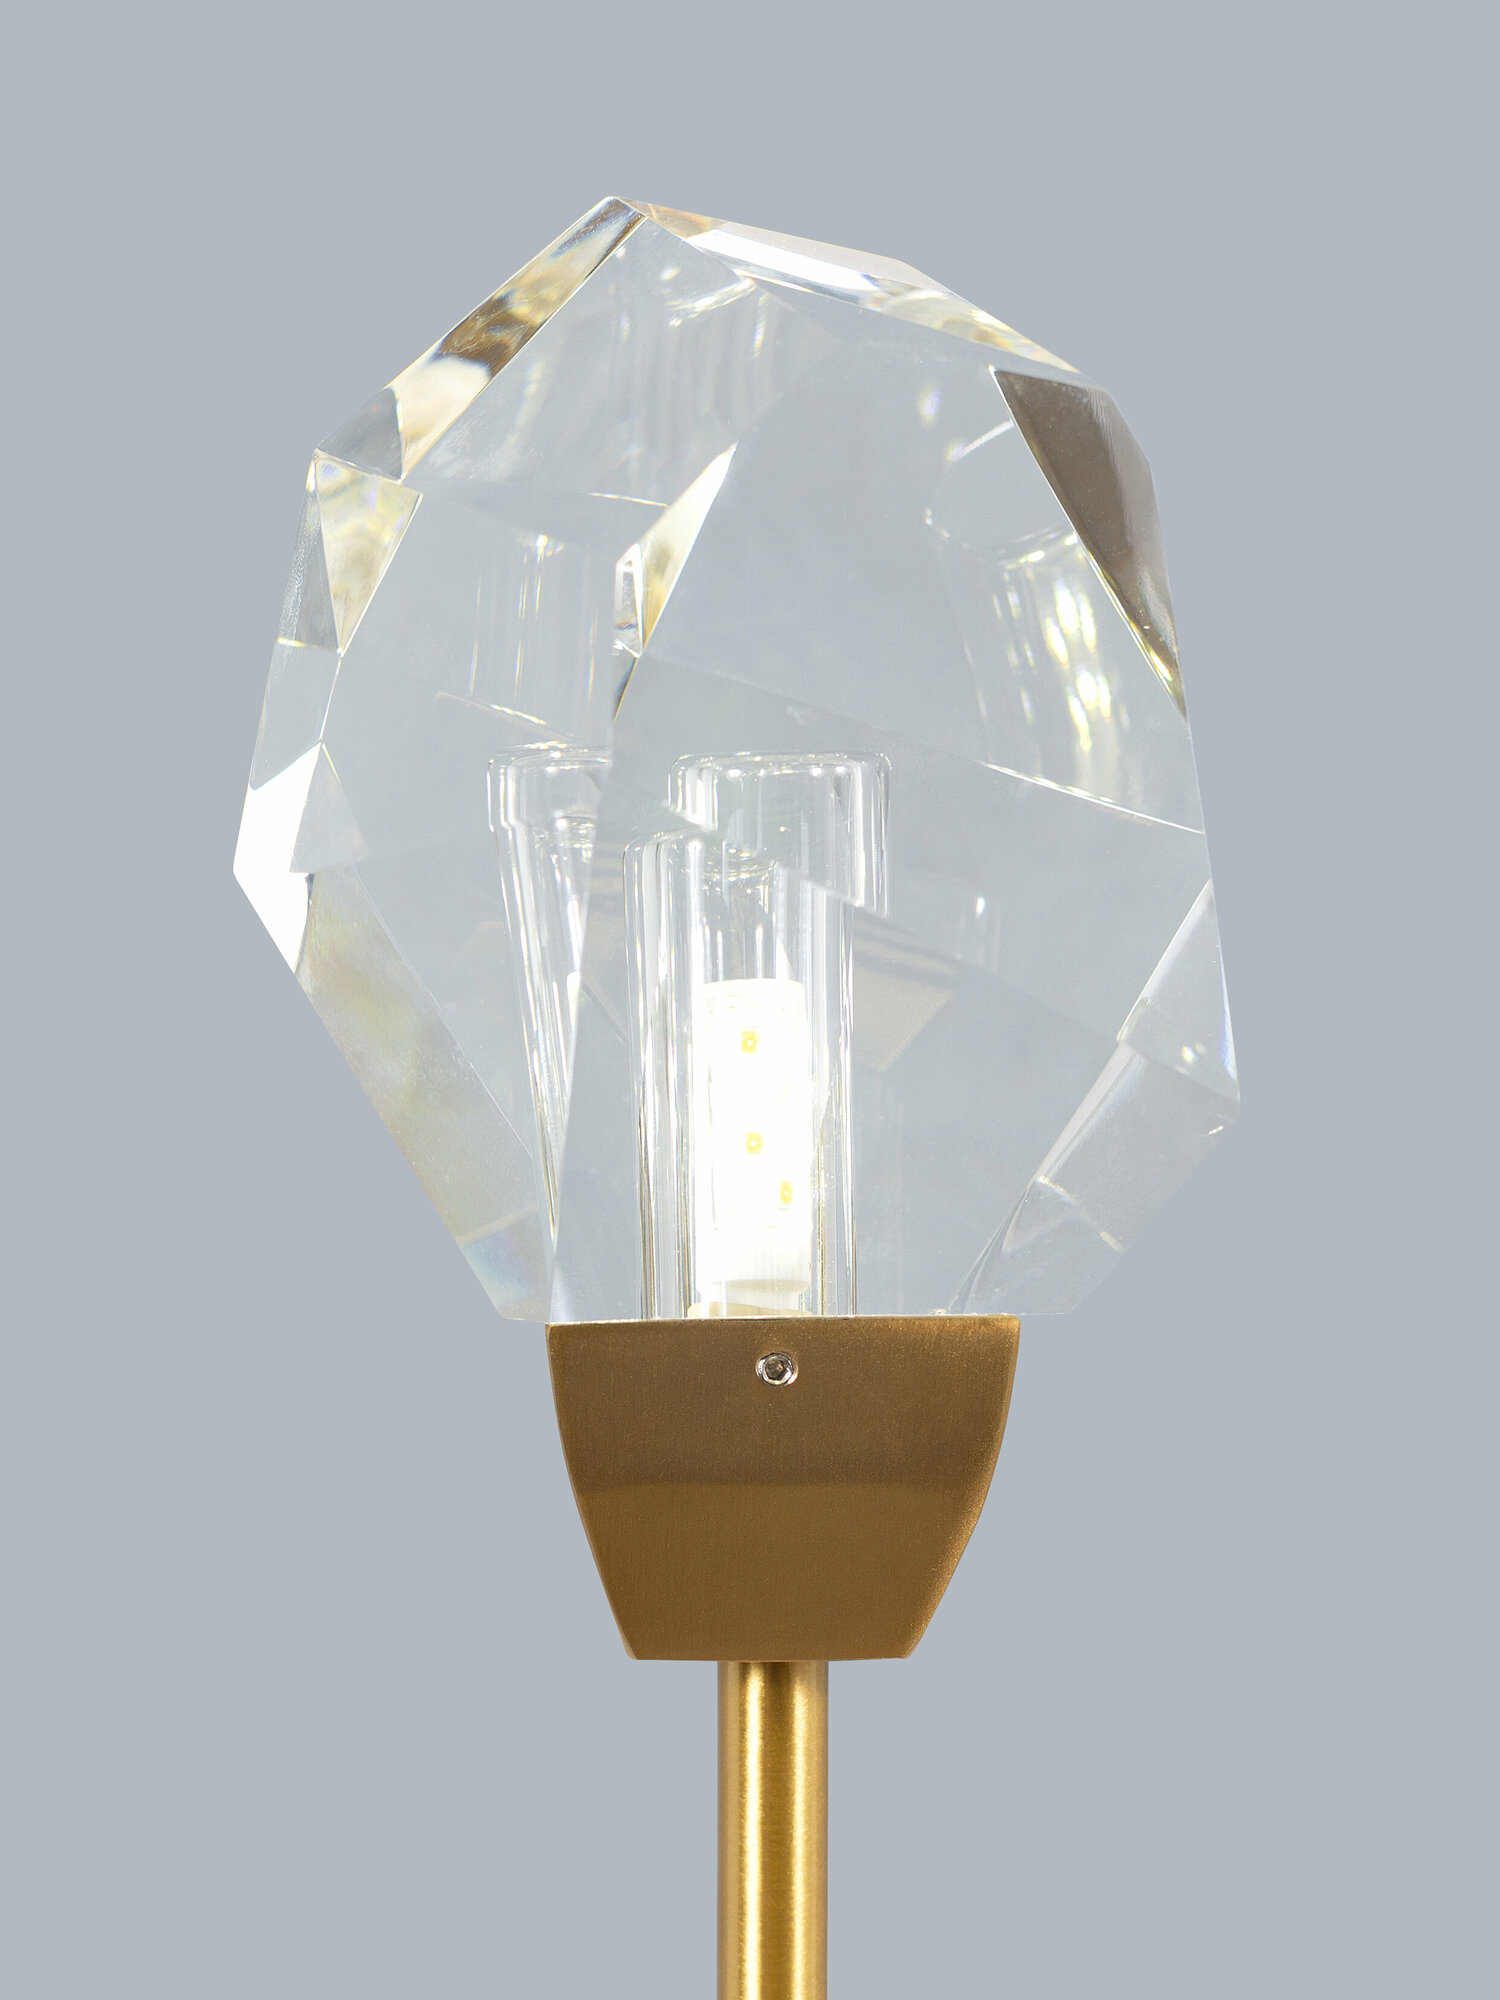 Настенный светильник Sofitroom Diamante, LED светильник настенный, Бра, плафон стекло, корпус металл, цвет золотой, светильник светодиодный на стену,